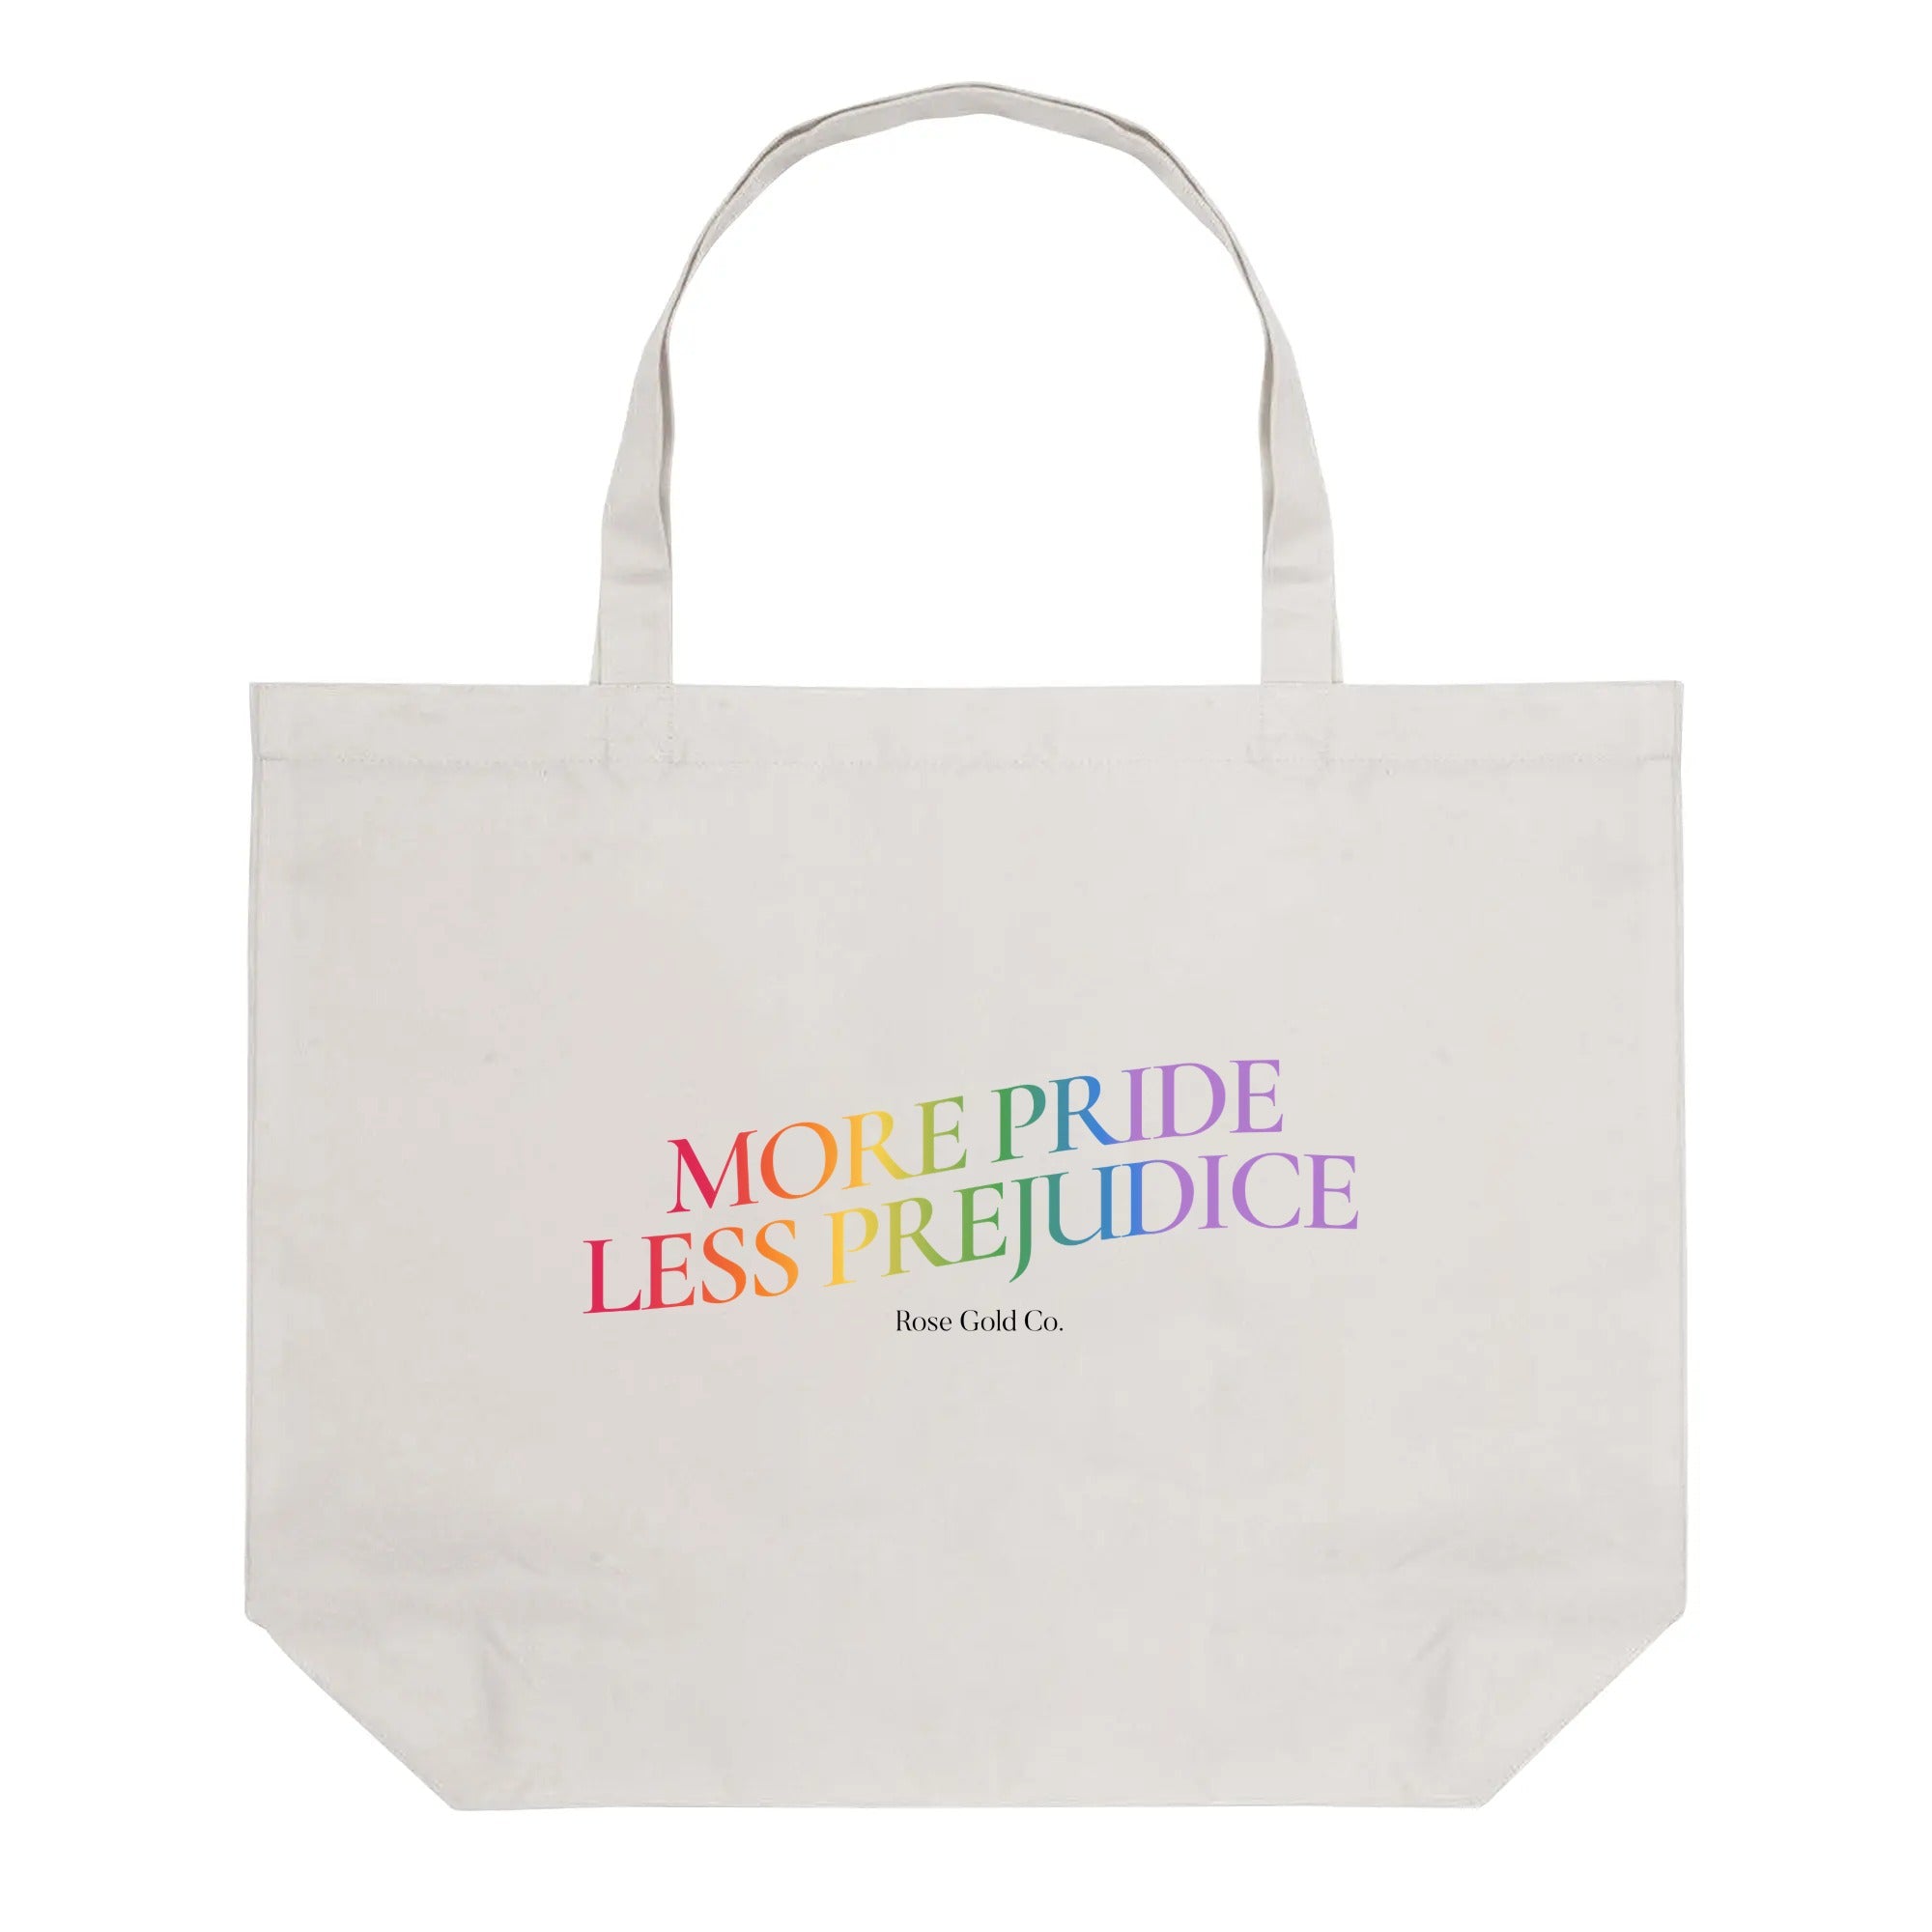 More Pride Less Prejudice Tote Bag (Single-sided Print)